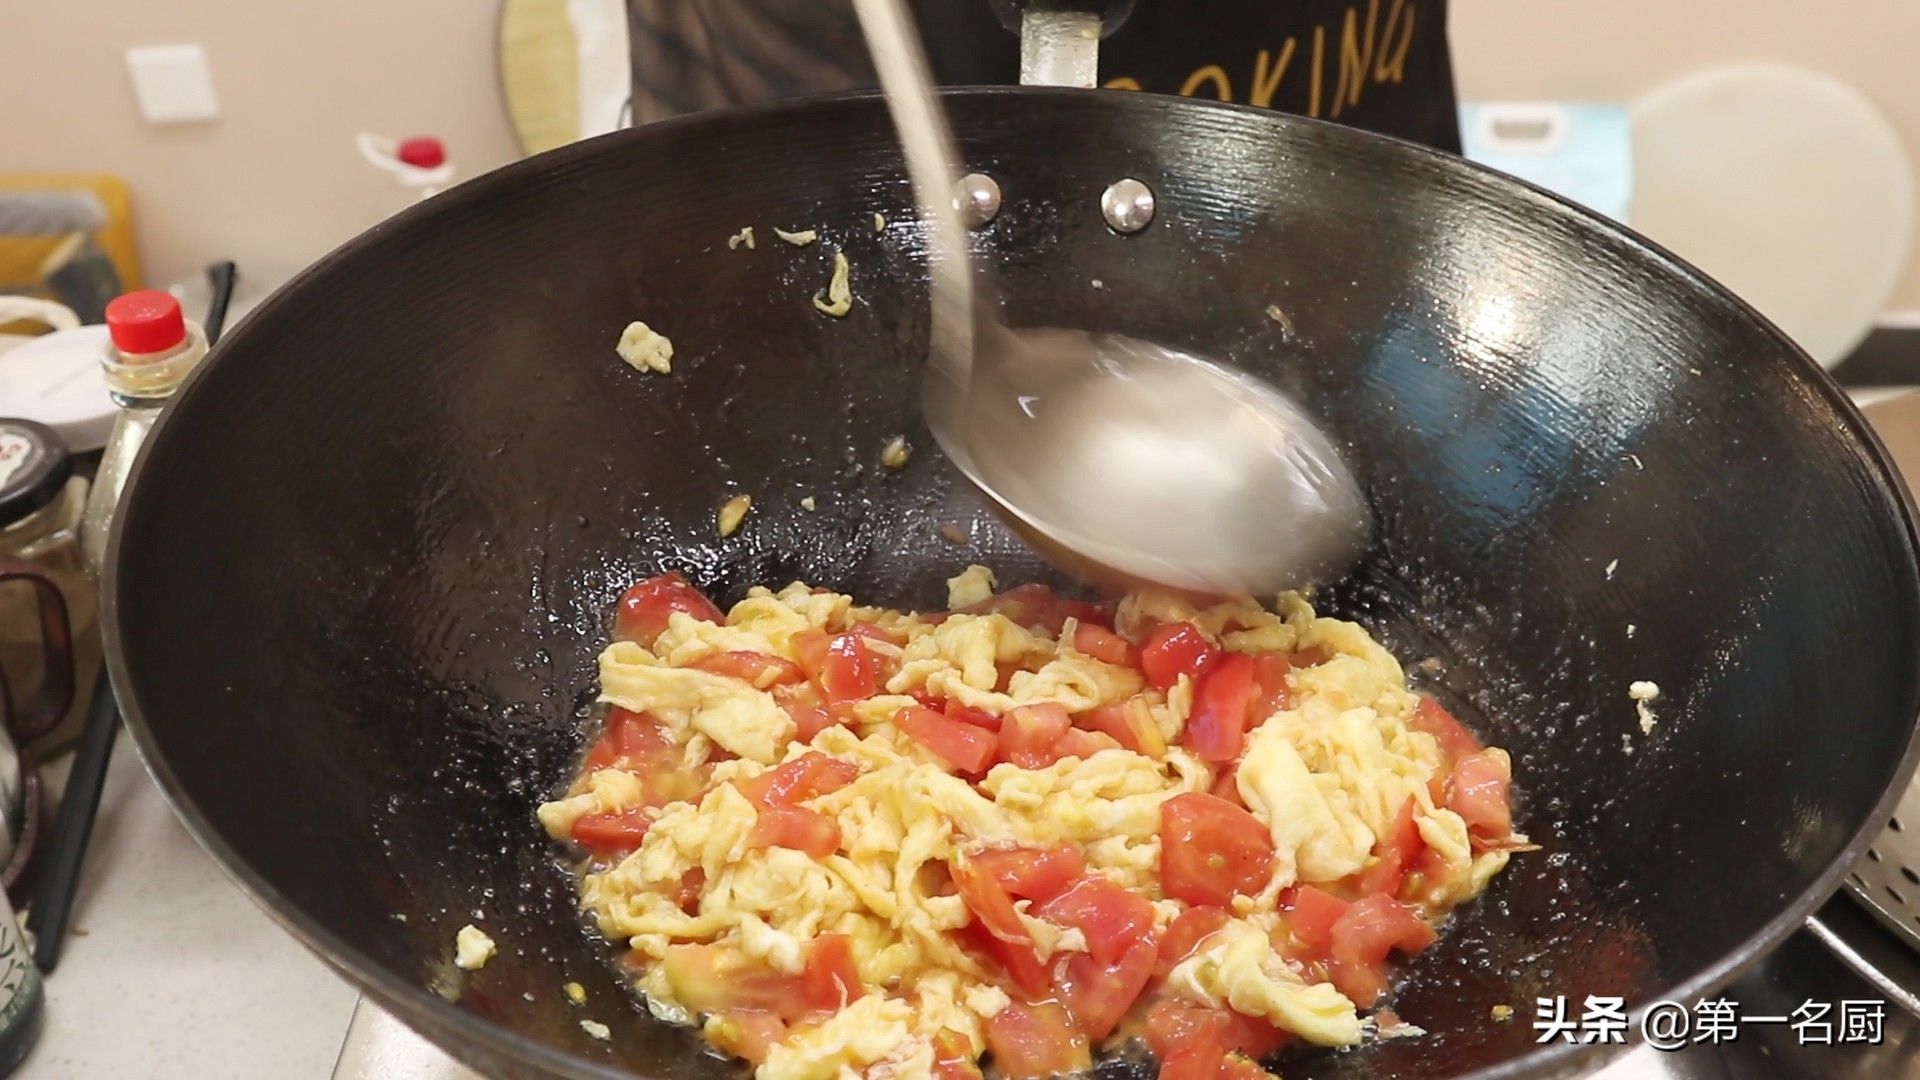 番茄炒蛋盖浇饭（西红柿鸡蛋盖浇饭”的家常做法）-第9张图片